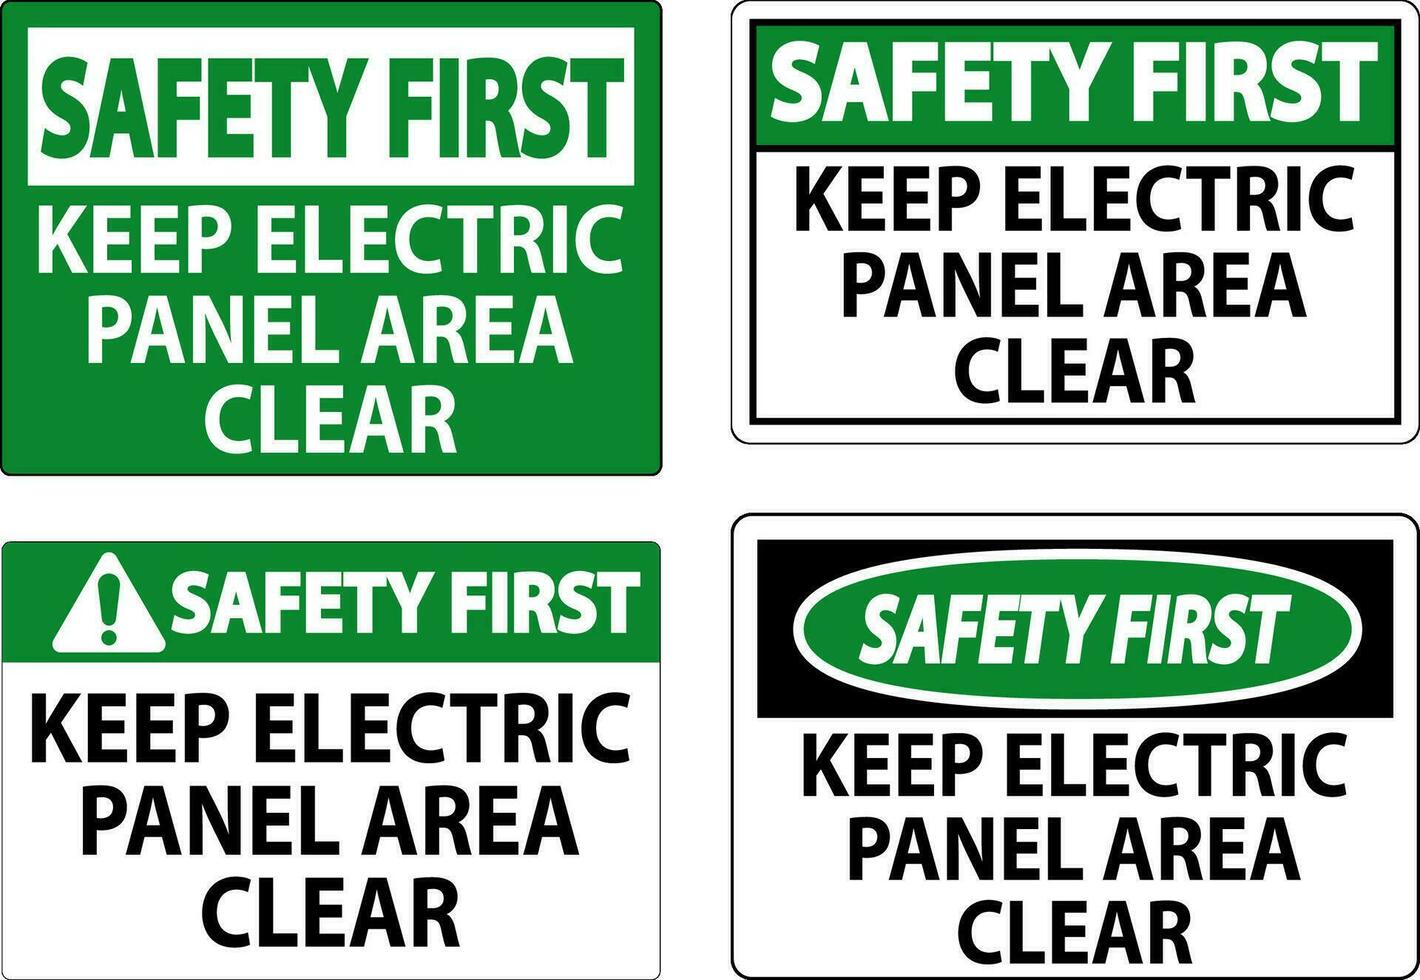 la seguridad primero firmar mantener eléctrico panel zona claro vector